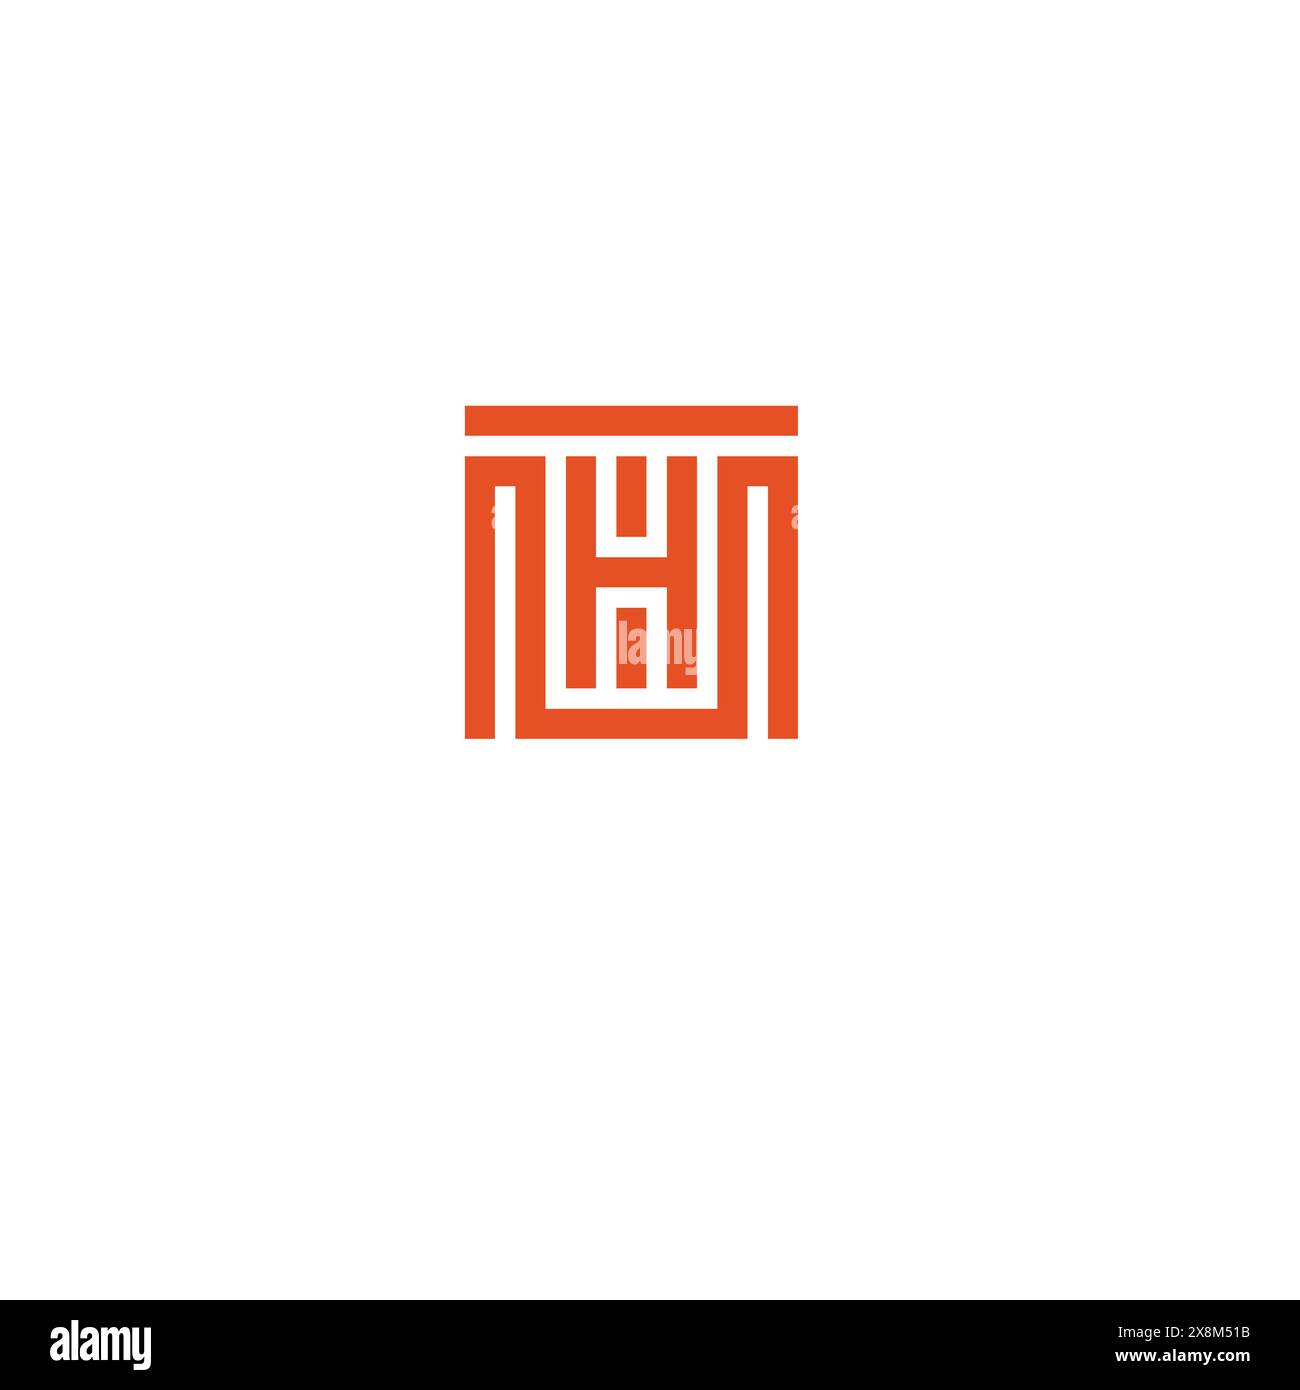 HM logo design, symbol, icon, vector file logo, Stock Vector